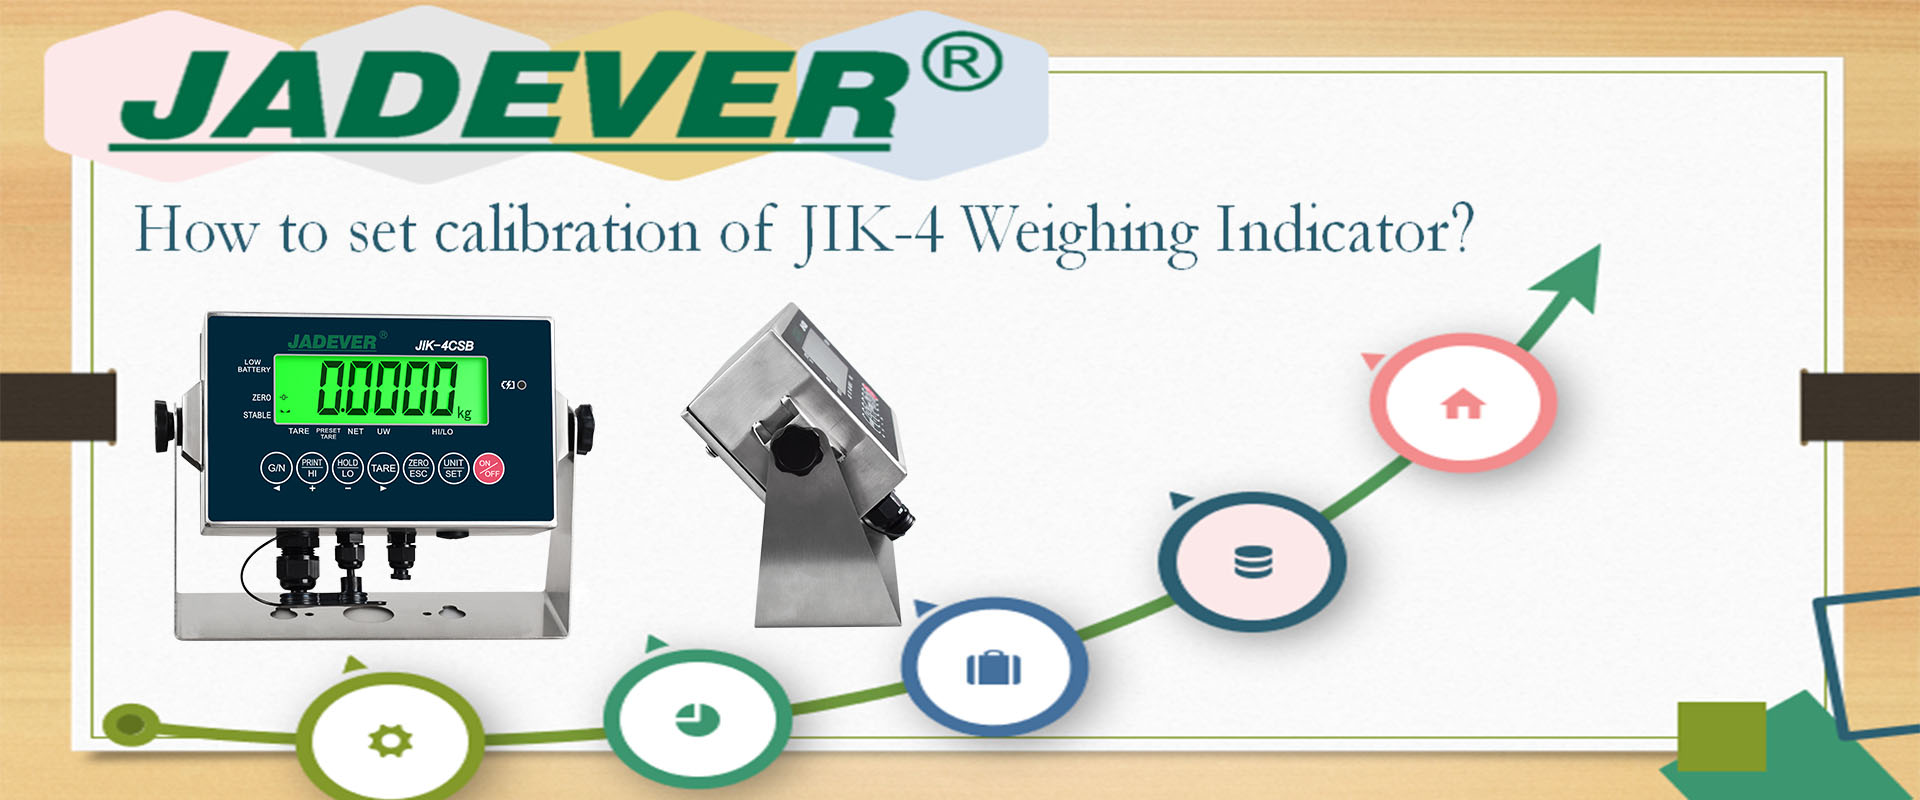 Comment régler l'étalonnage de l'indicateur de pesage JIK-4 ?
